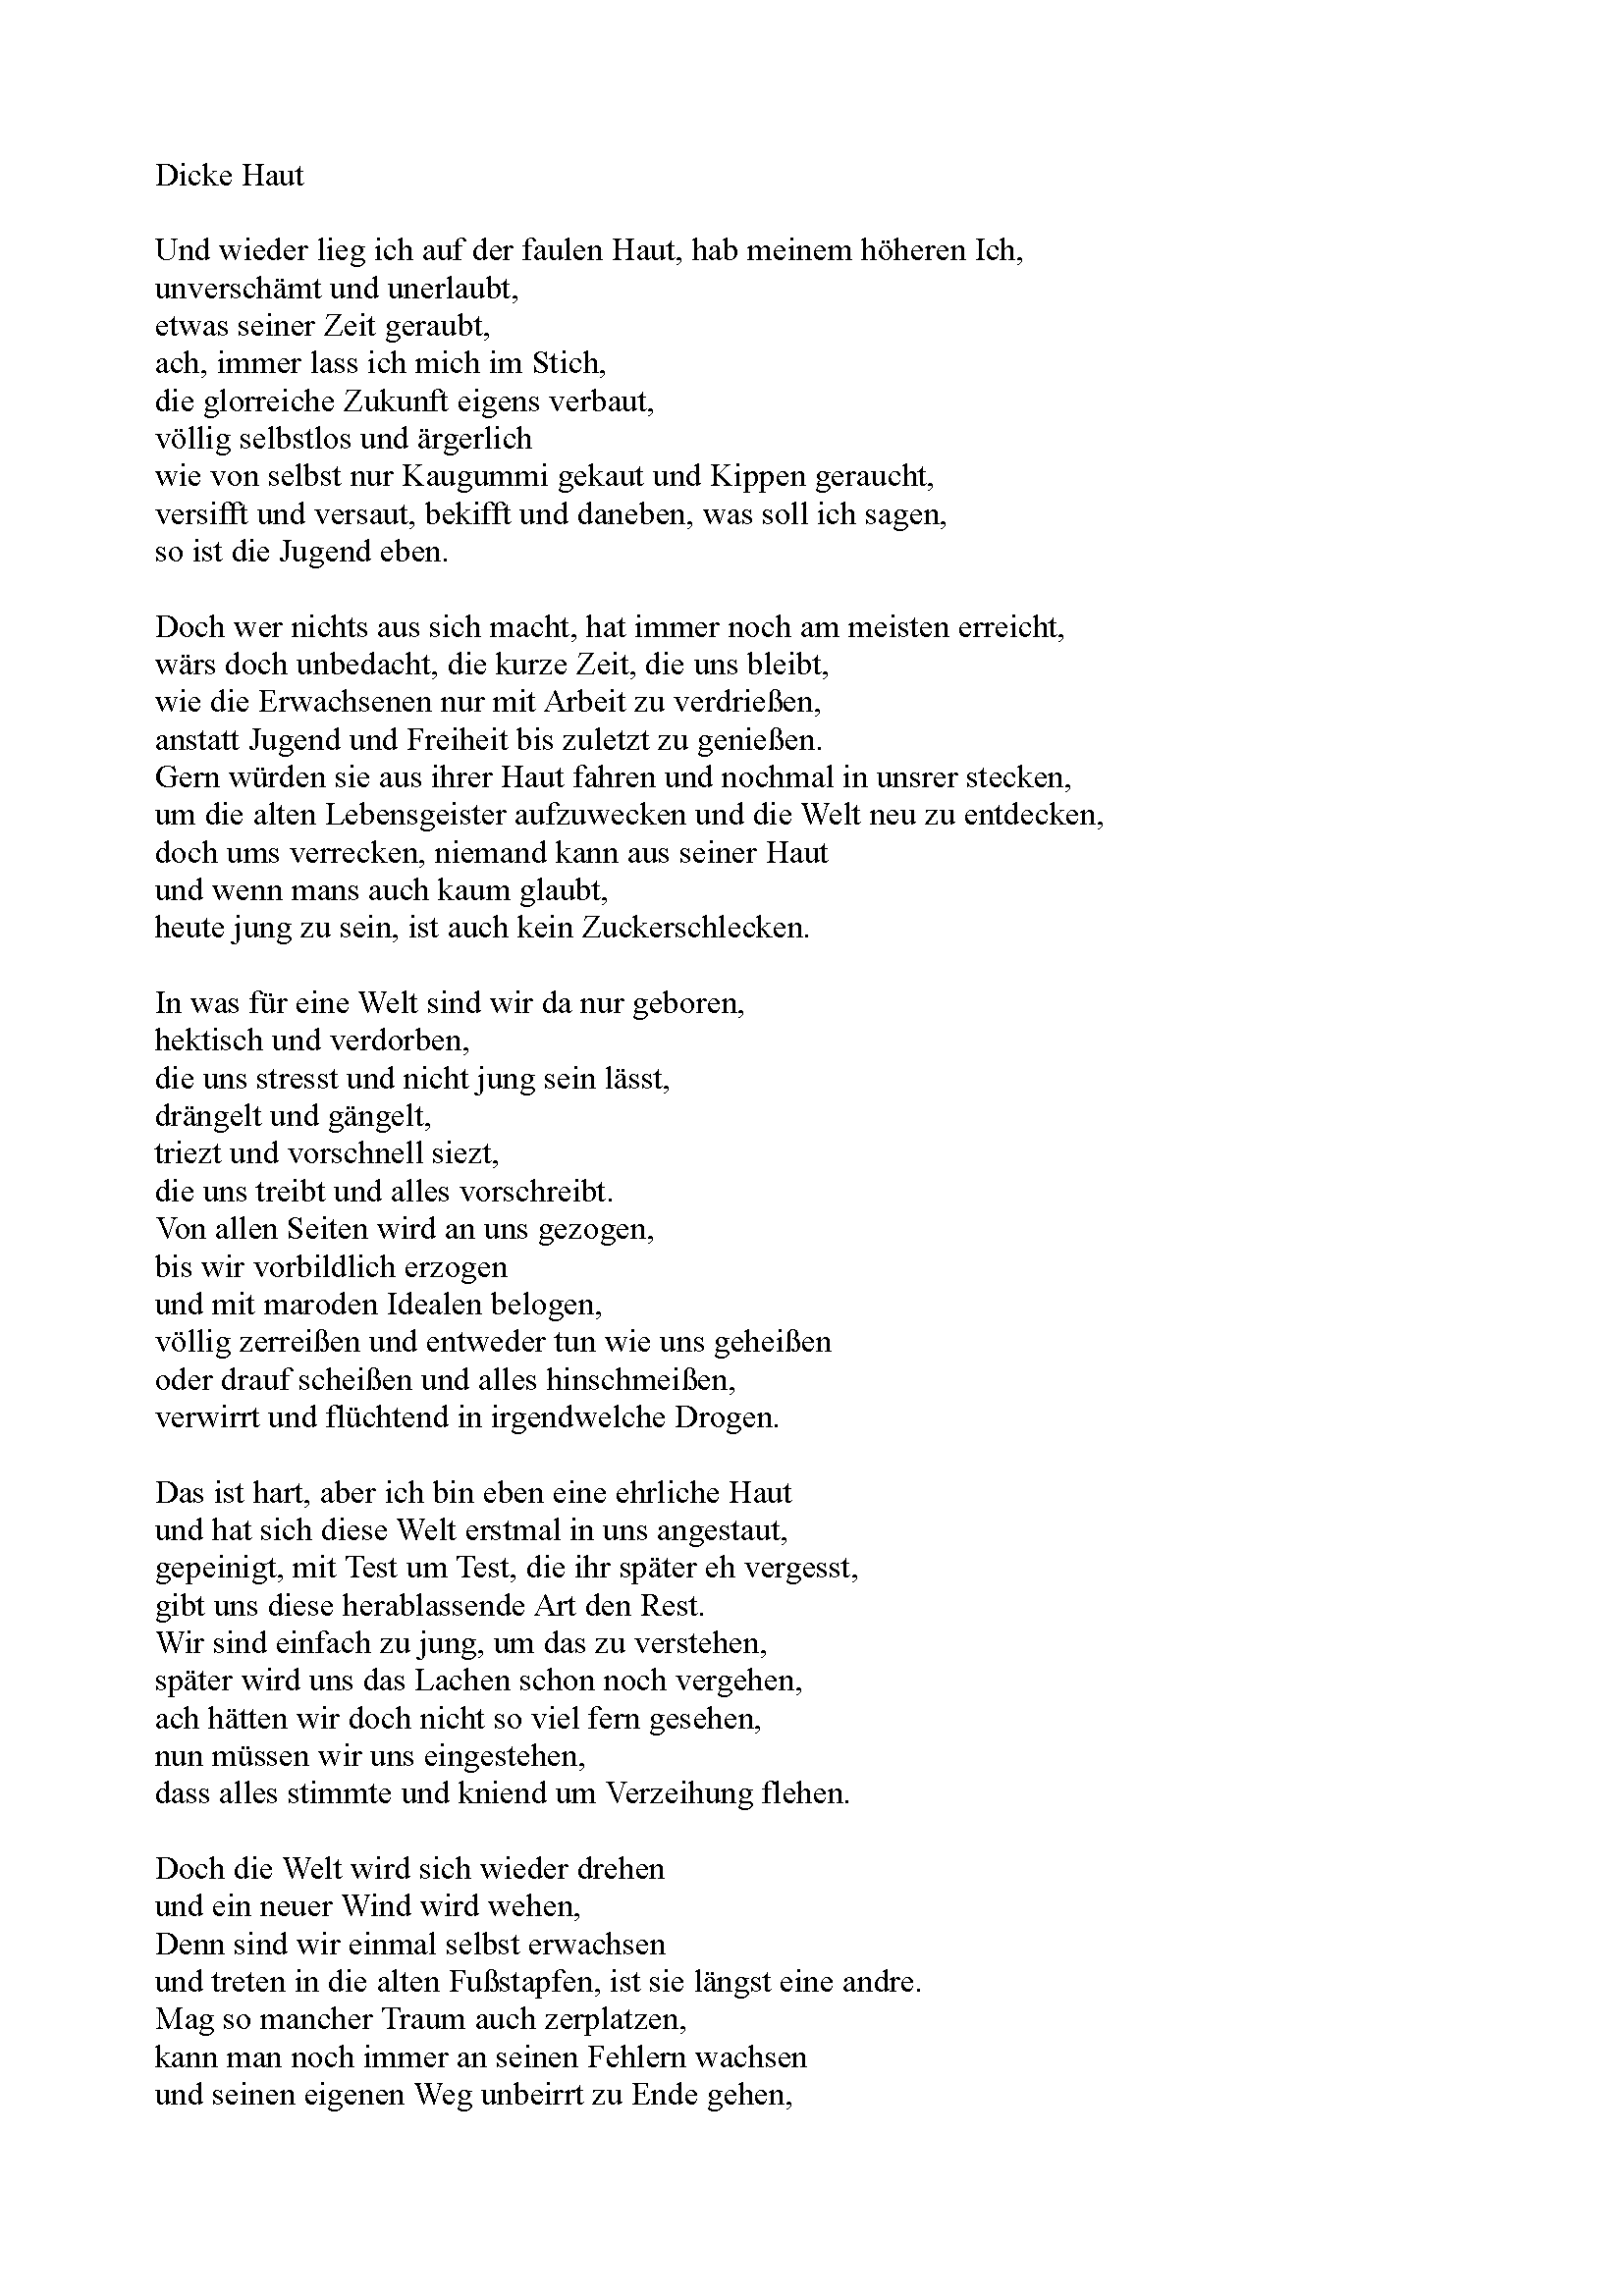 Gedicht "Dicke Haut" Seite 1